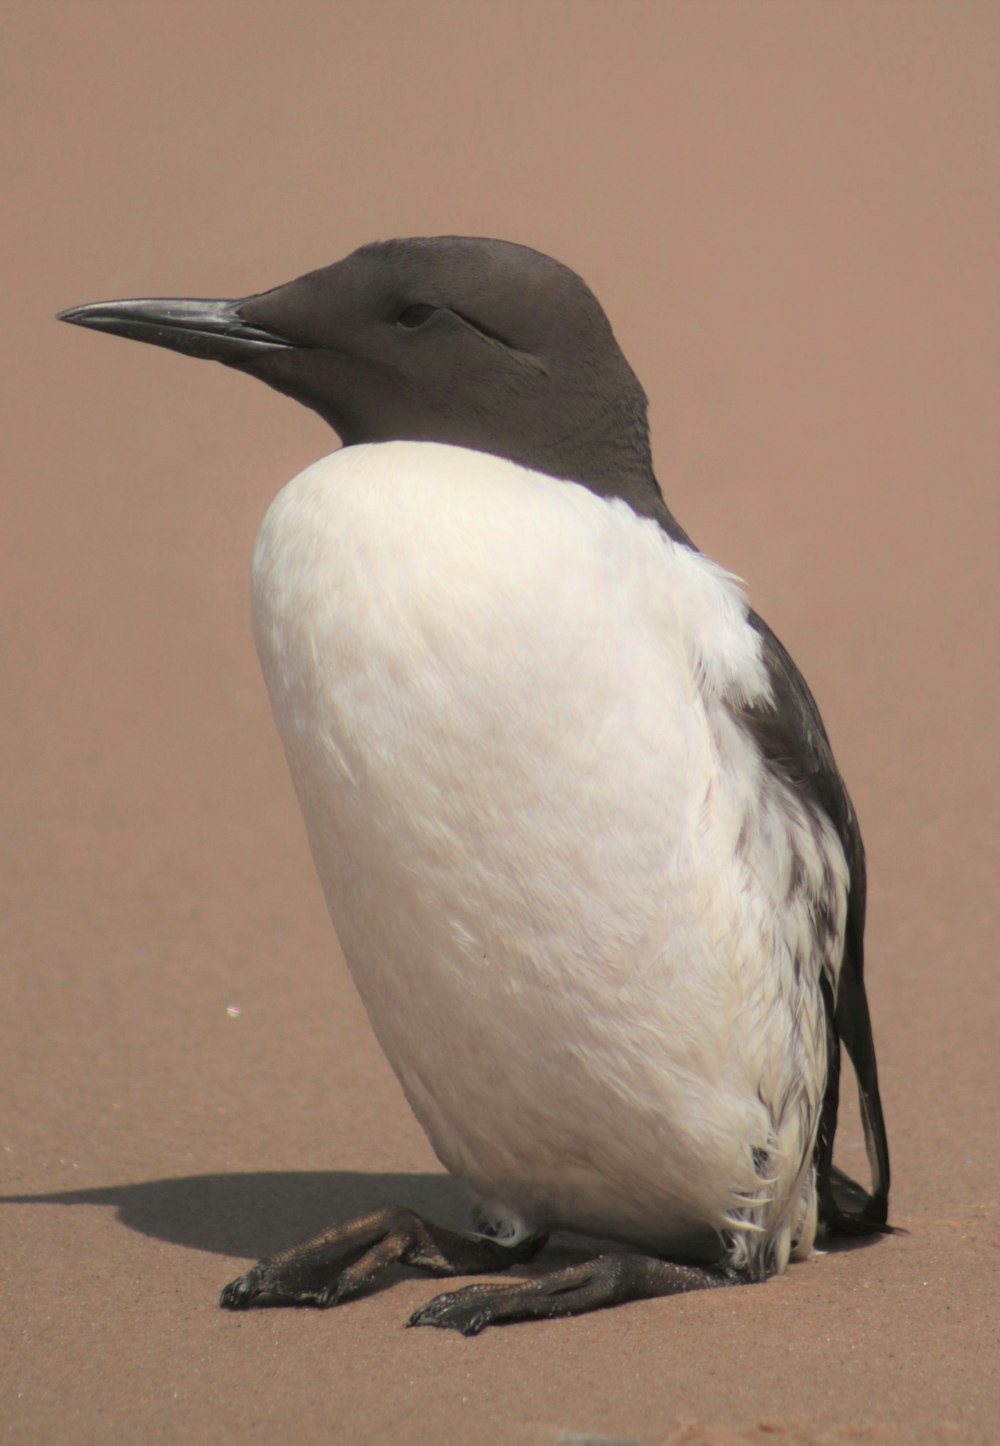 Ein schwarz-weißer Vogel sitzt auf dem Sand